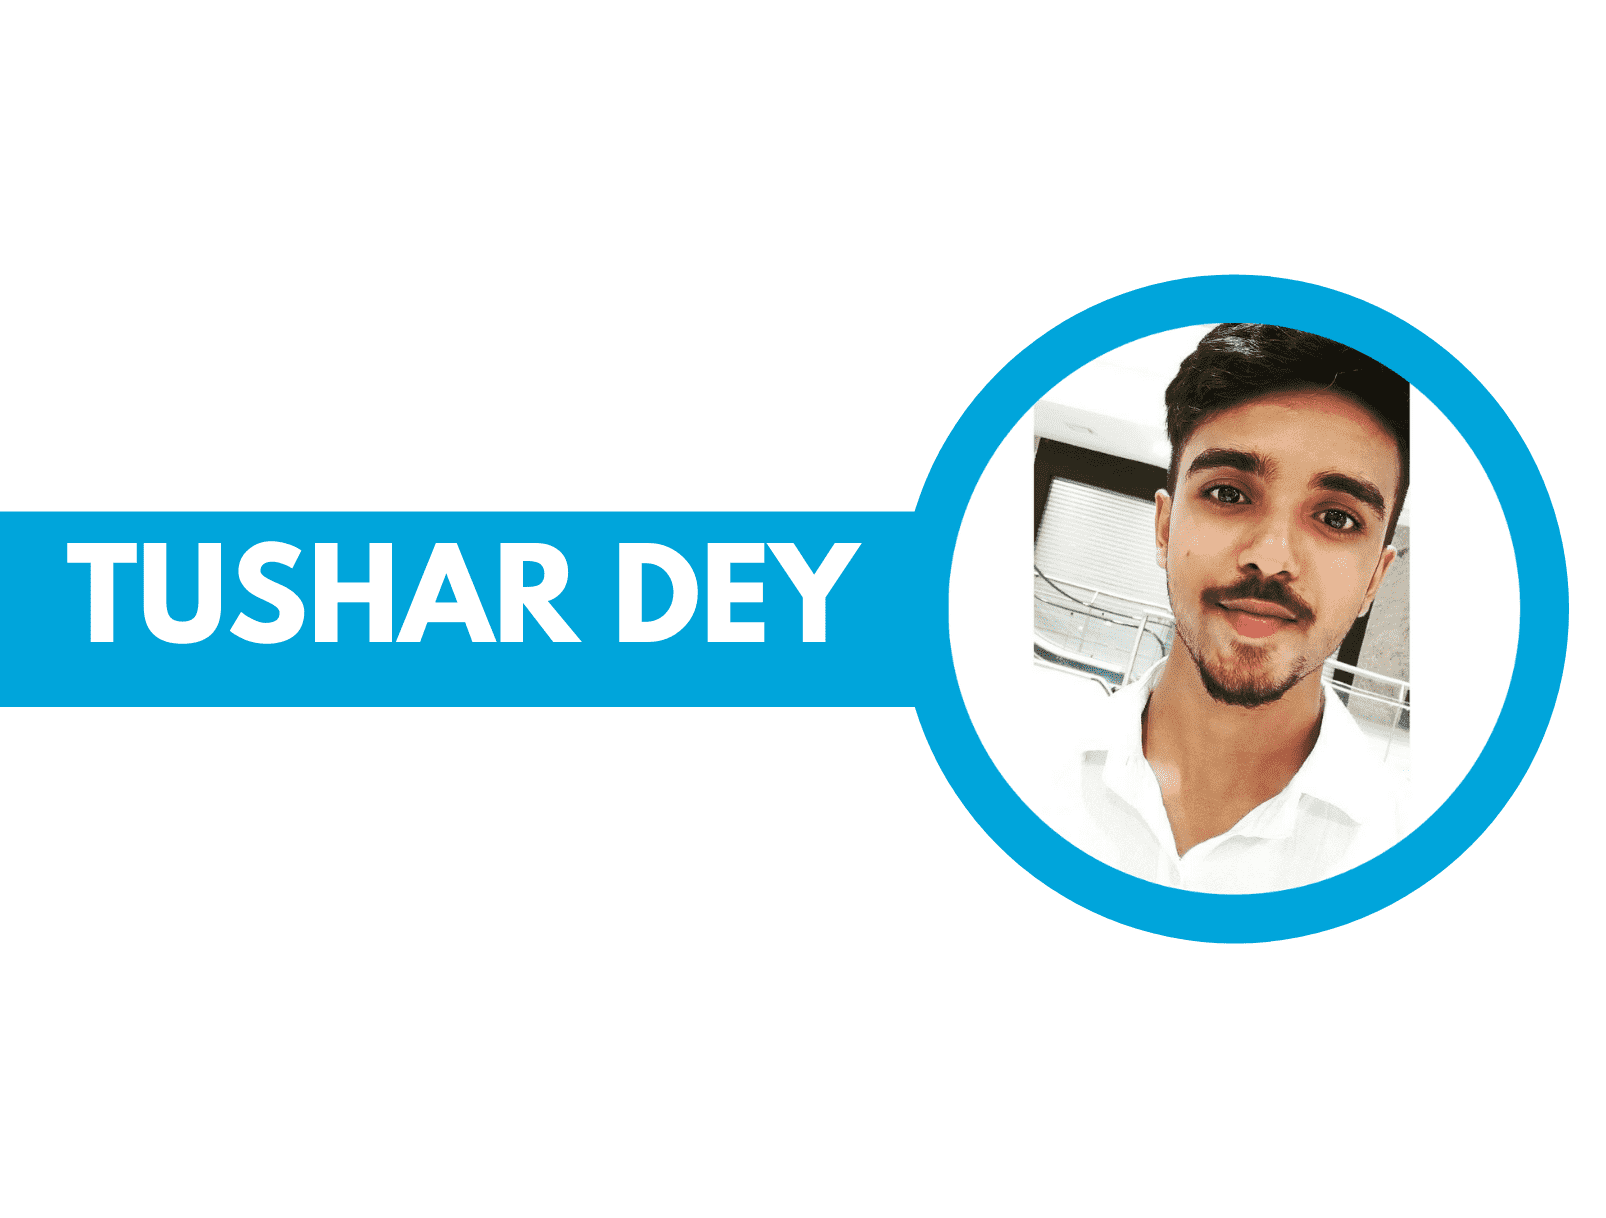 Tushar dey